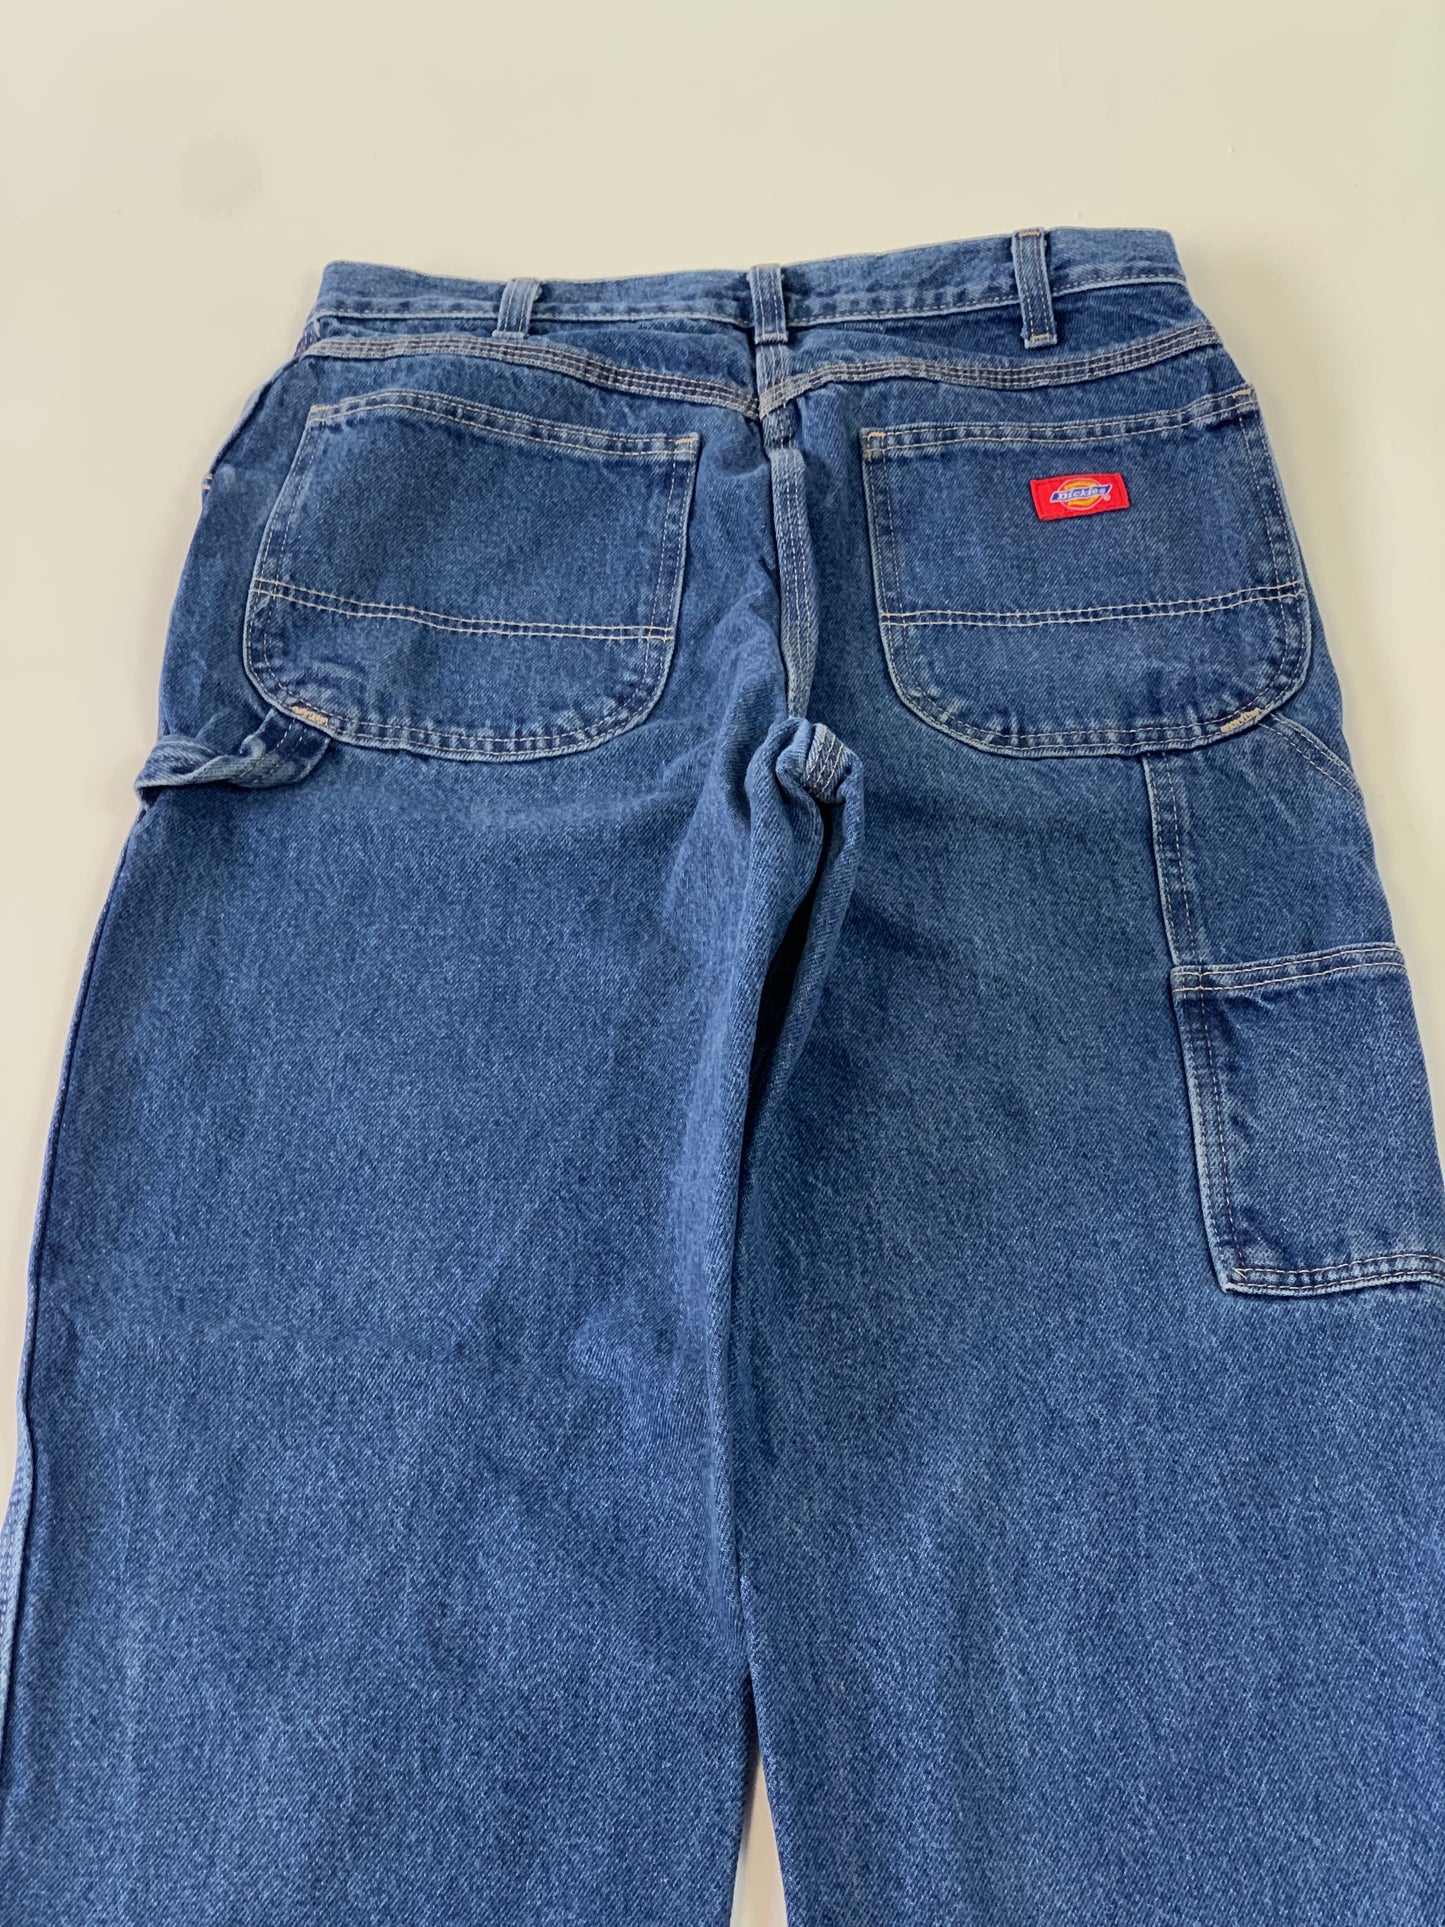 Dickies Vintage Carpenter Jeans - 34 x 30